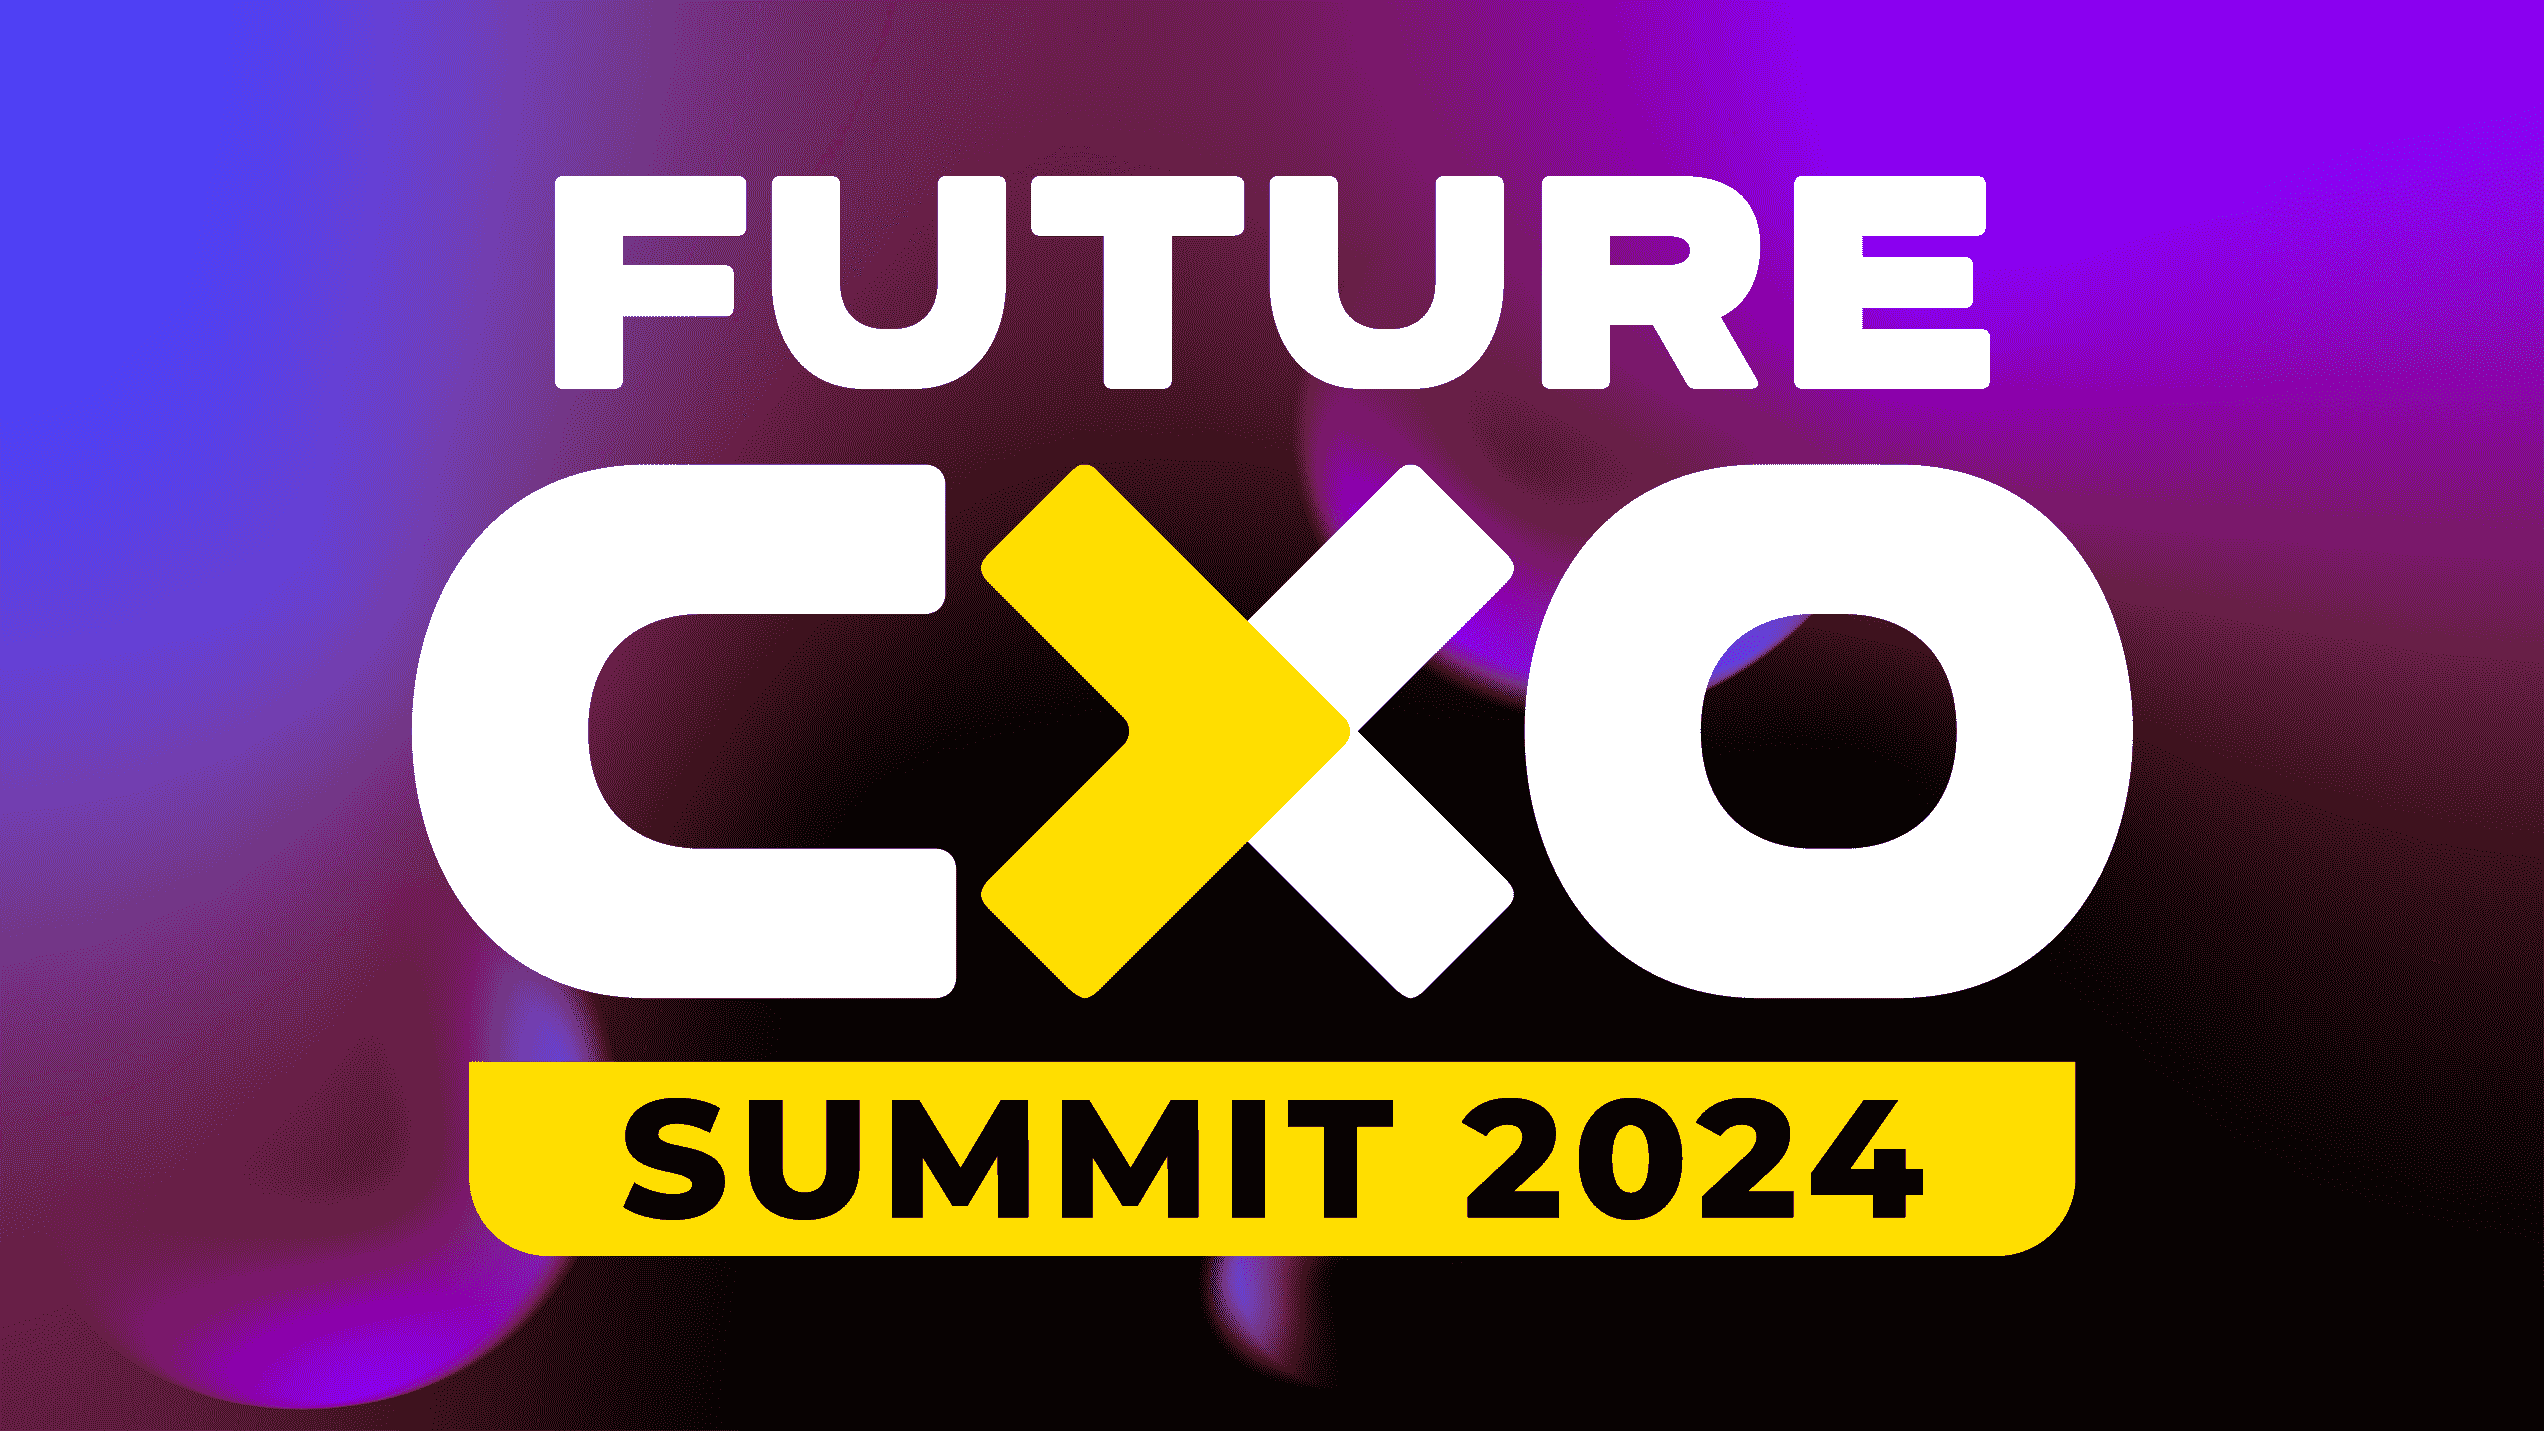 Future CXO Summit 2024 Chapter 1